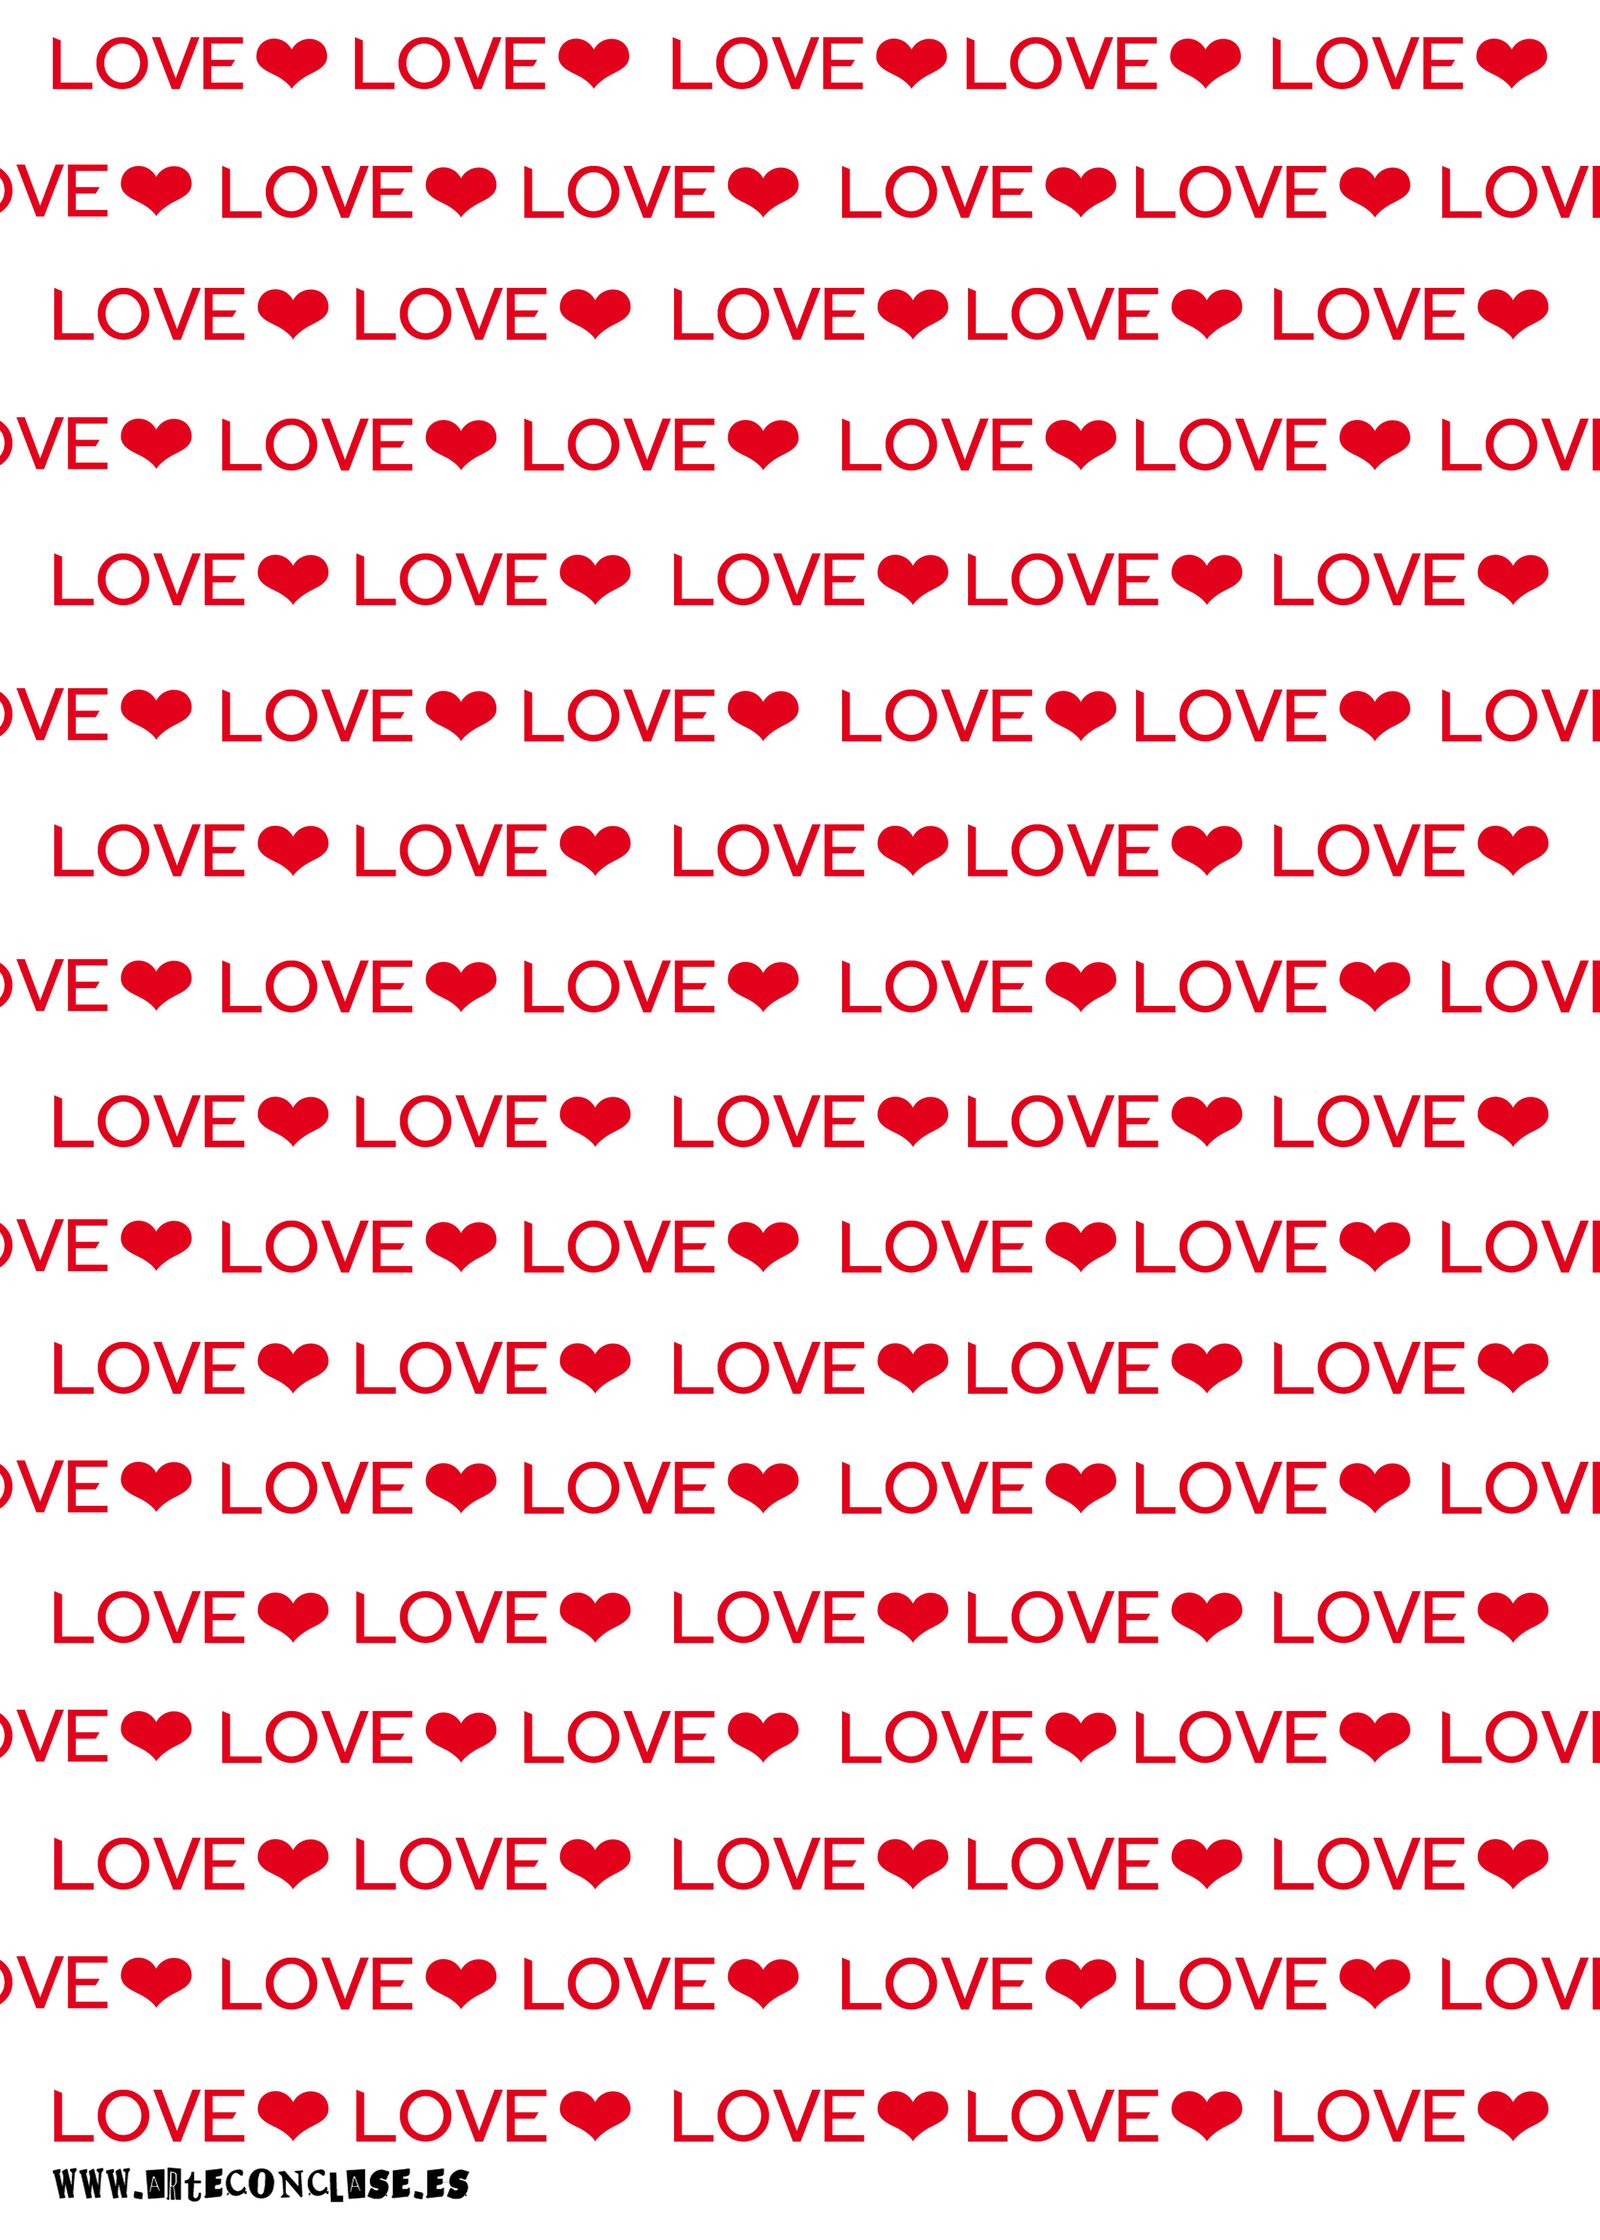 Letras Love Dia de los enamorados Papel decorativo Arte con clase manualidades tanto en casa como en clase